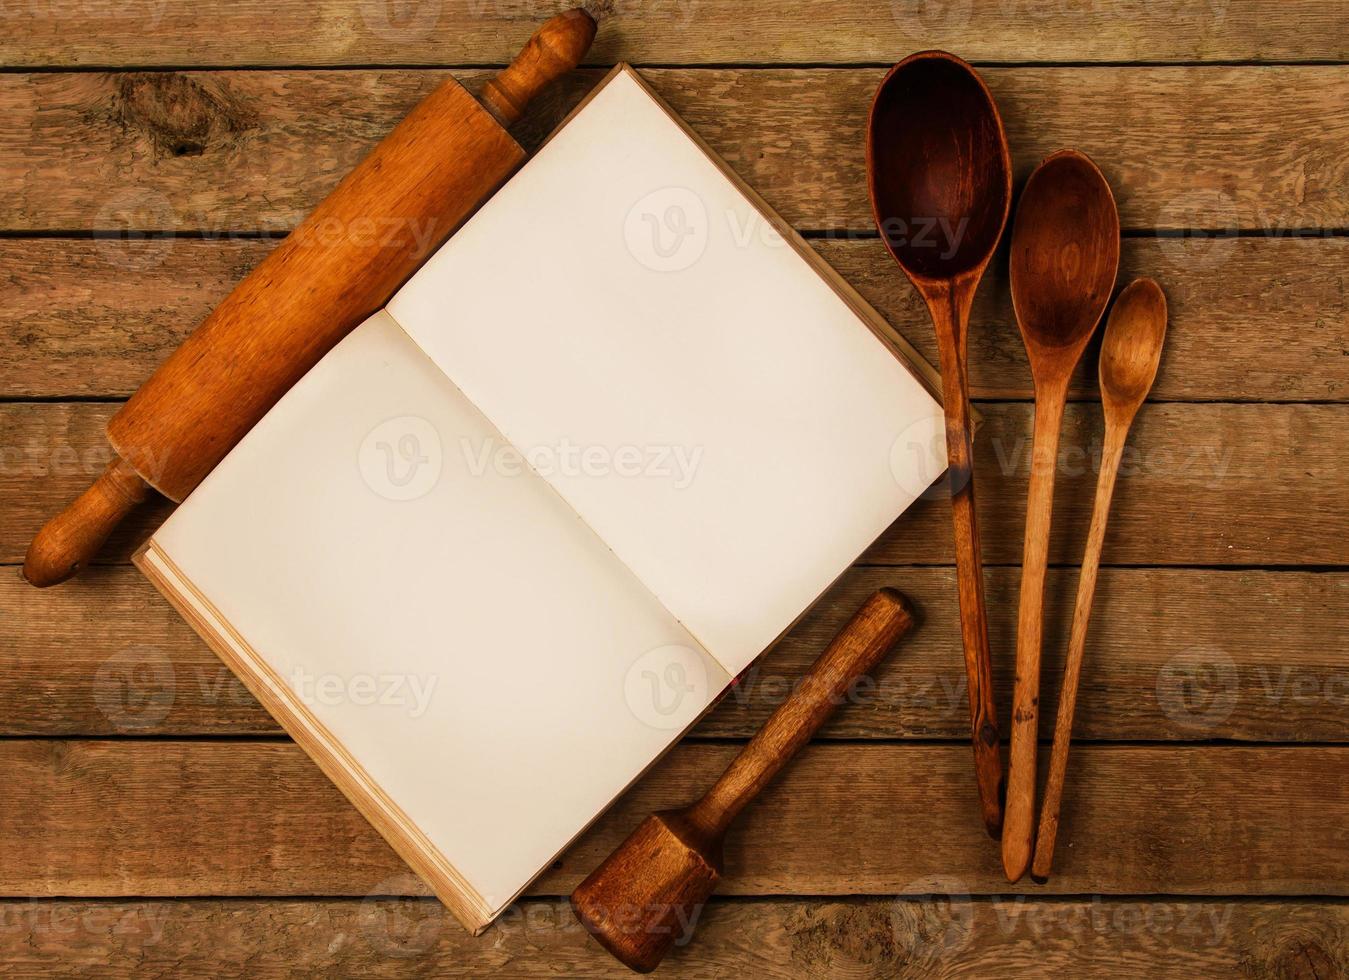 Küchenutensilien aus Holz foto